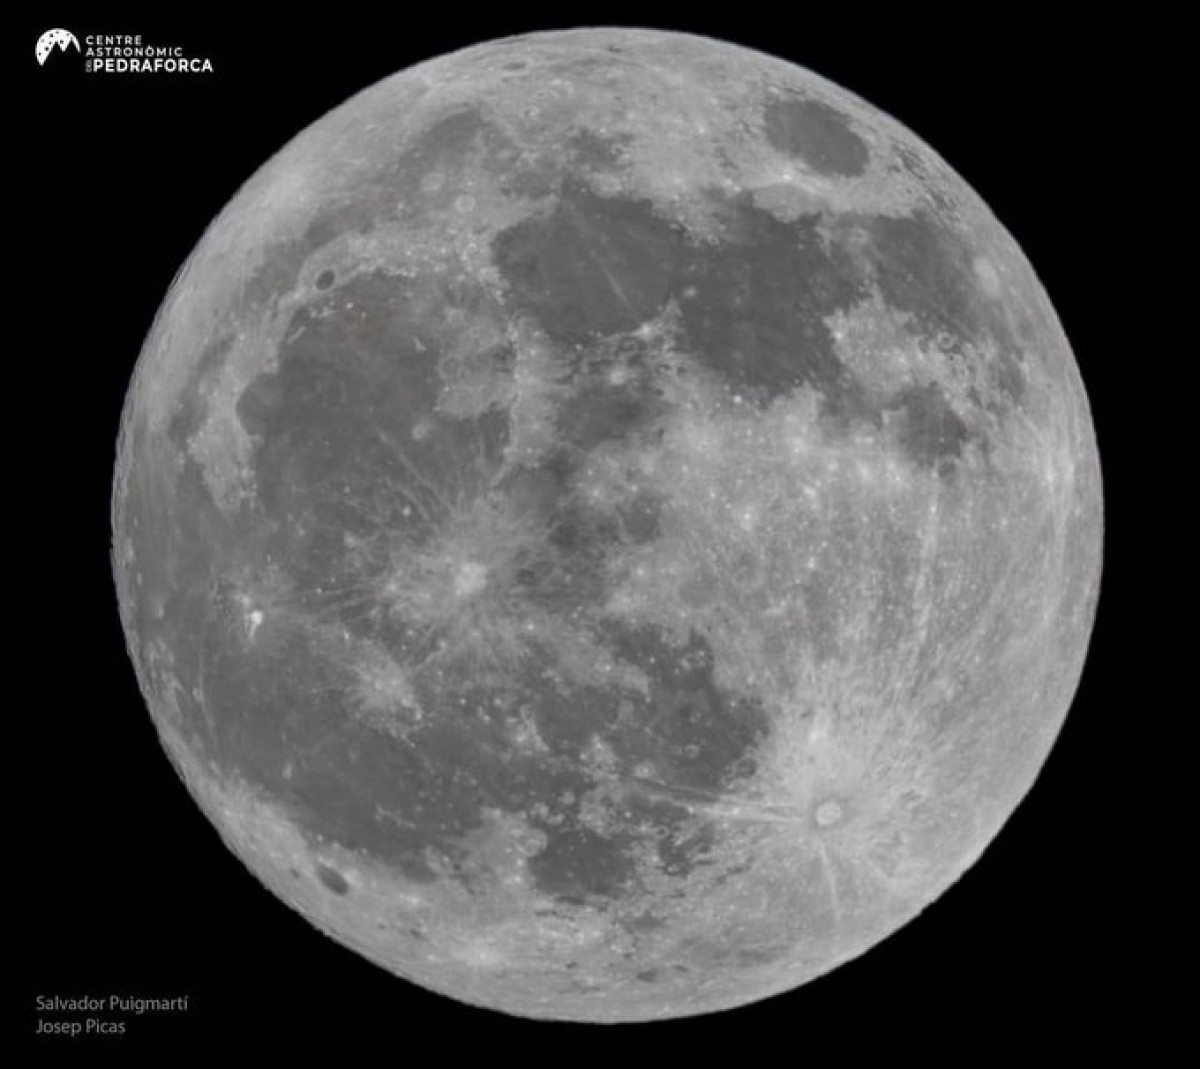 L'espectacular fotografia de la lluna feta a l'observatori astronòmic del Pedraforca.